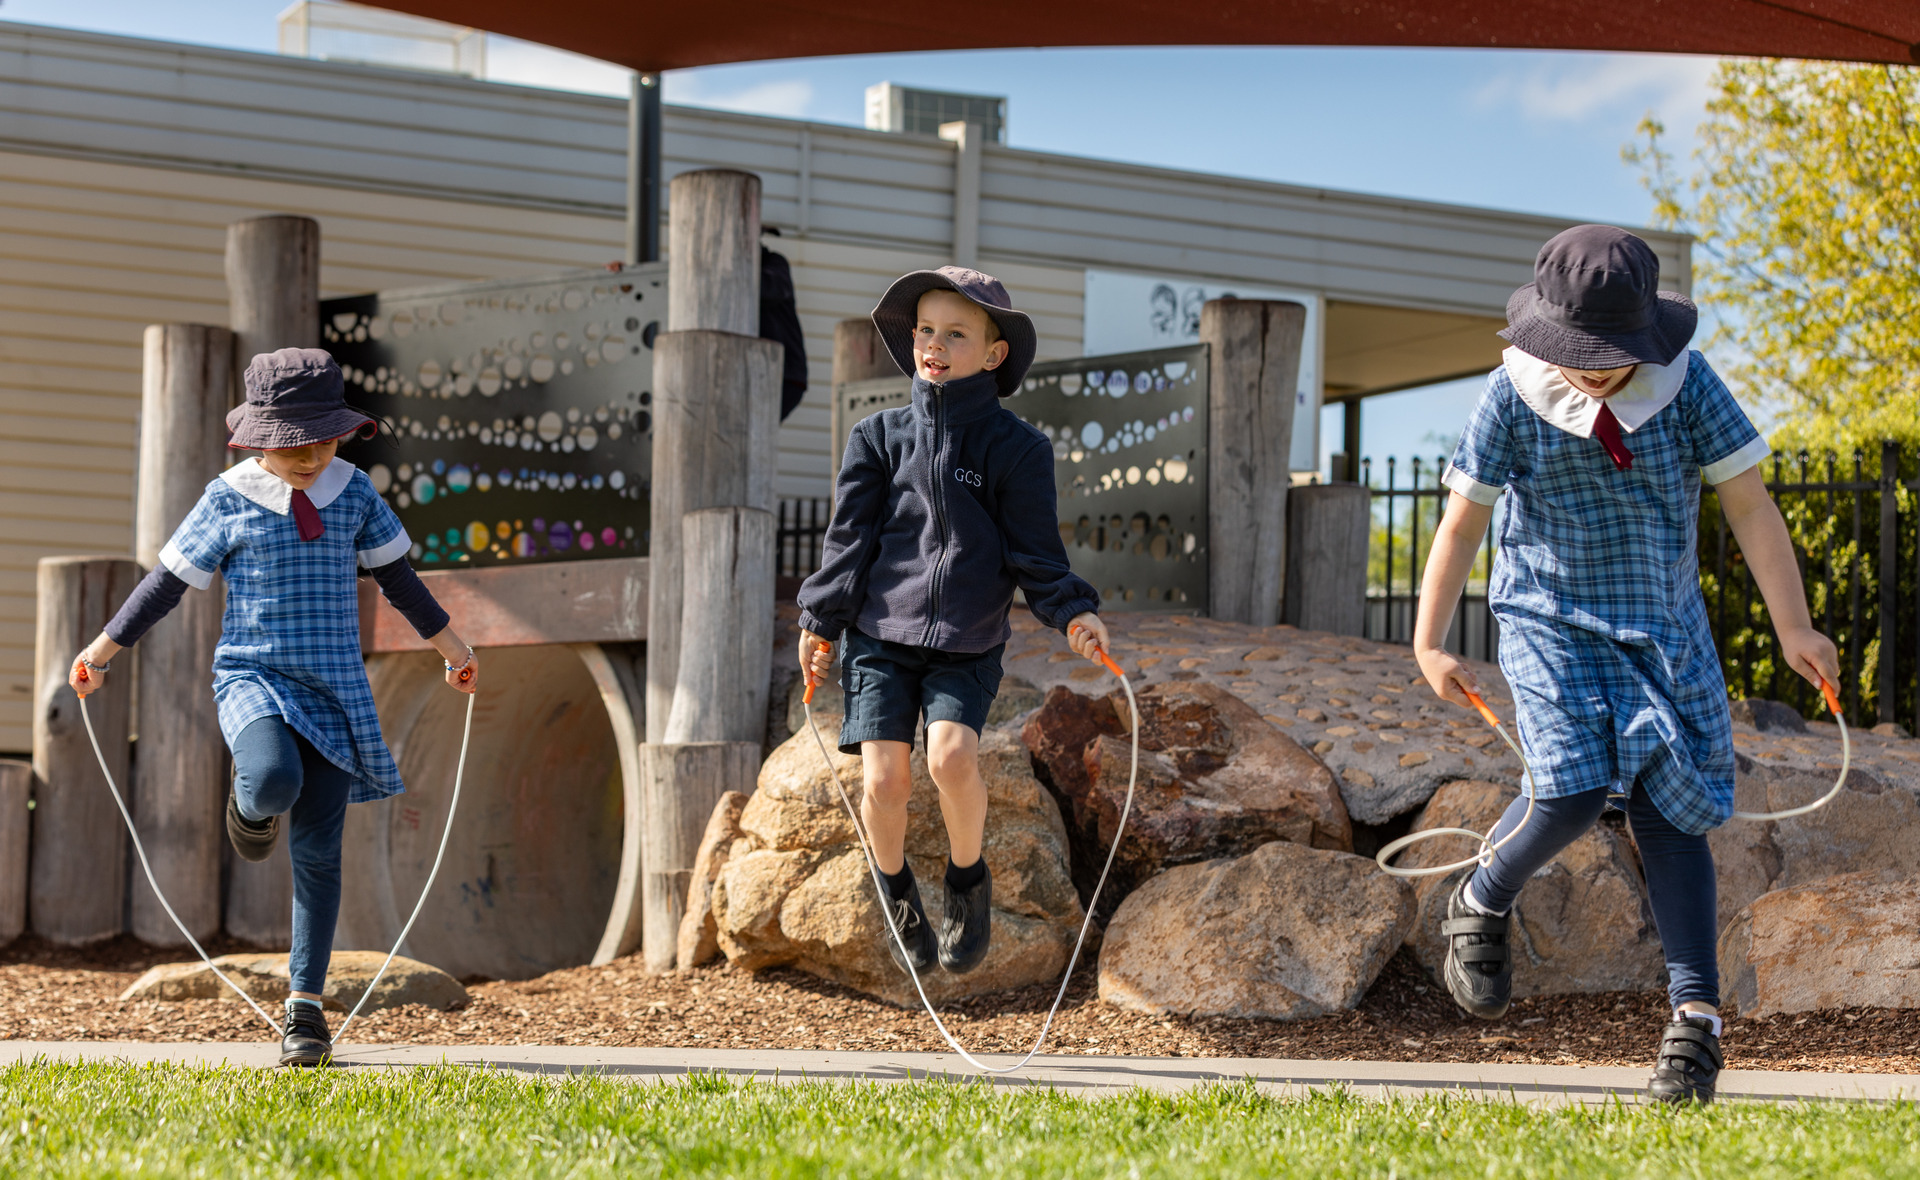 Three children in school uniform skip in front of a playground.